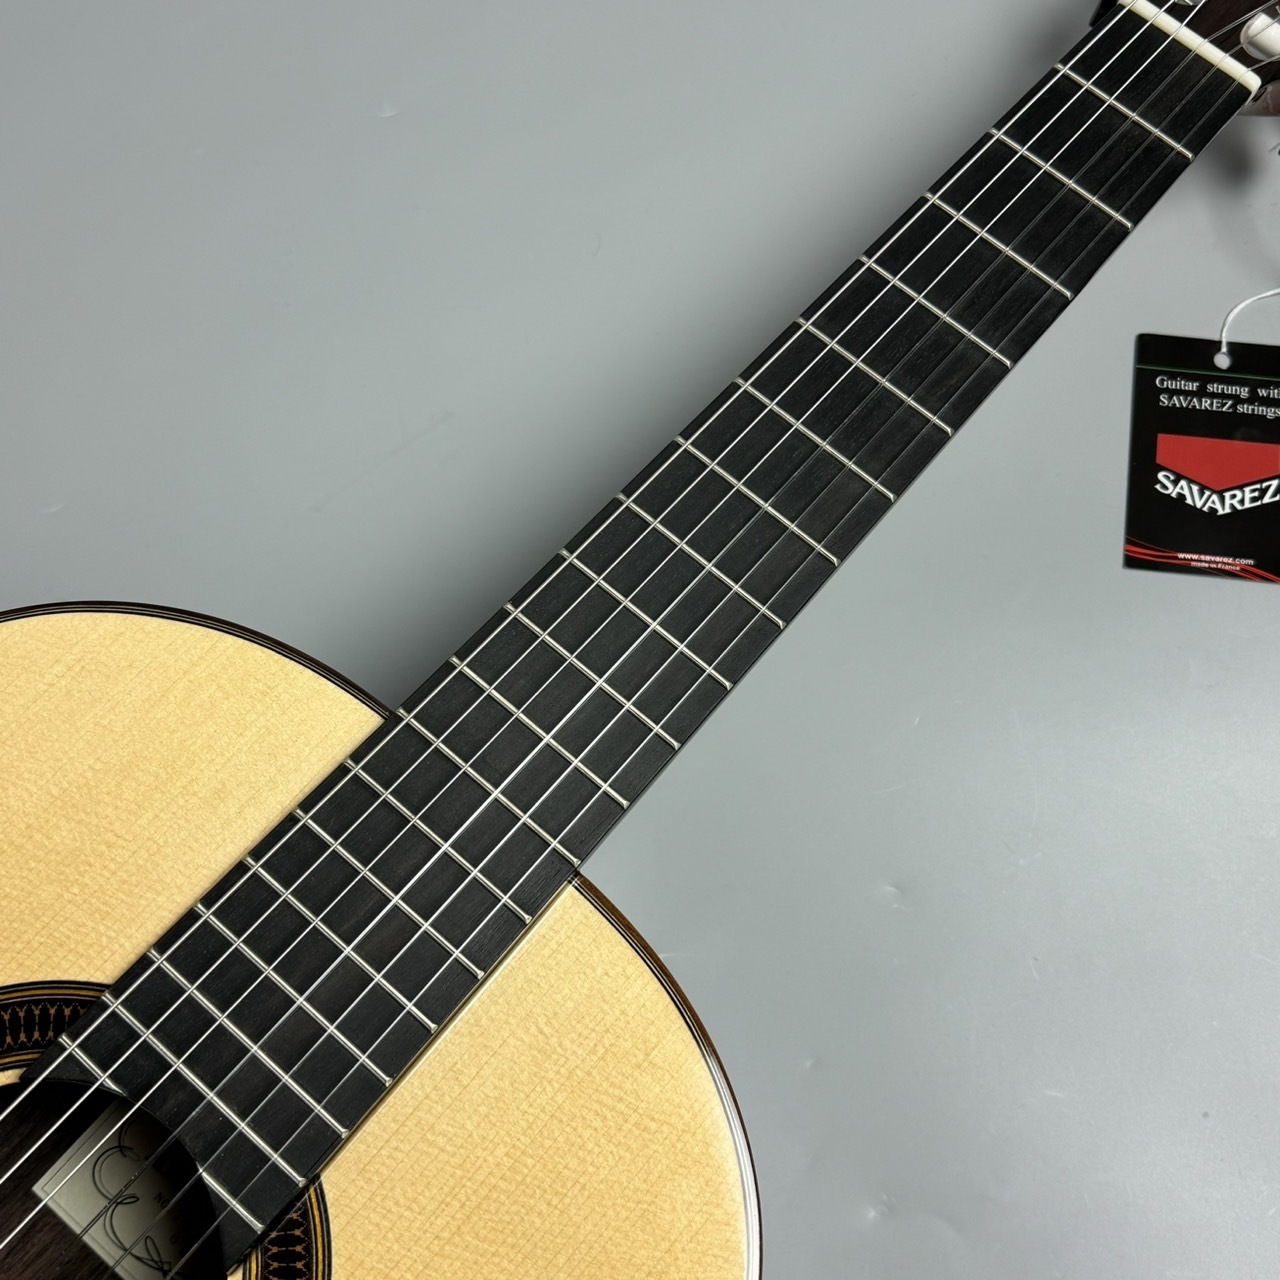 ARANJUEZ 707S 640mm クラシックギター【島村楽器限定モデル】【現物 